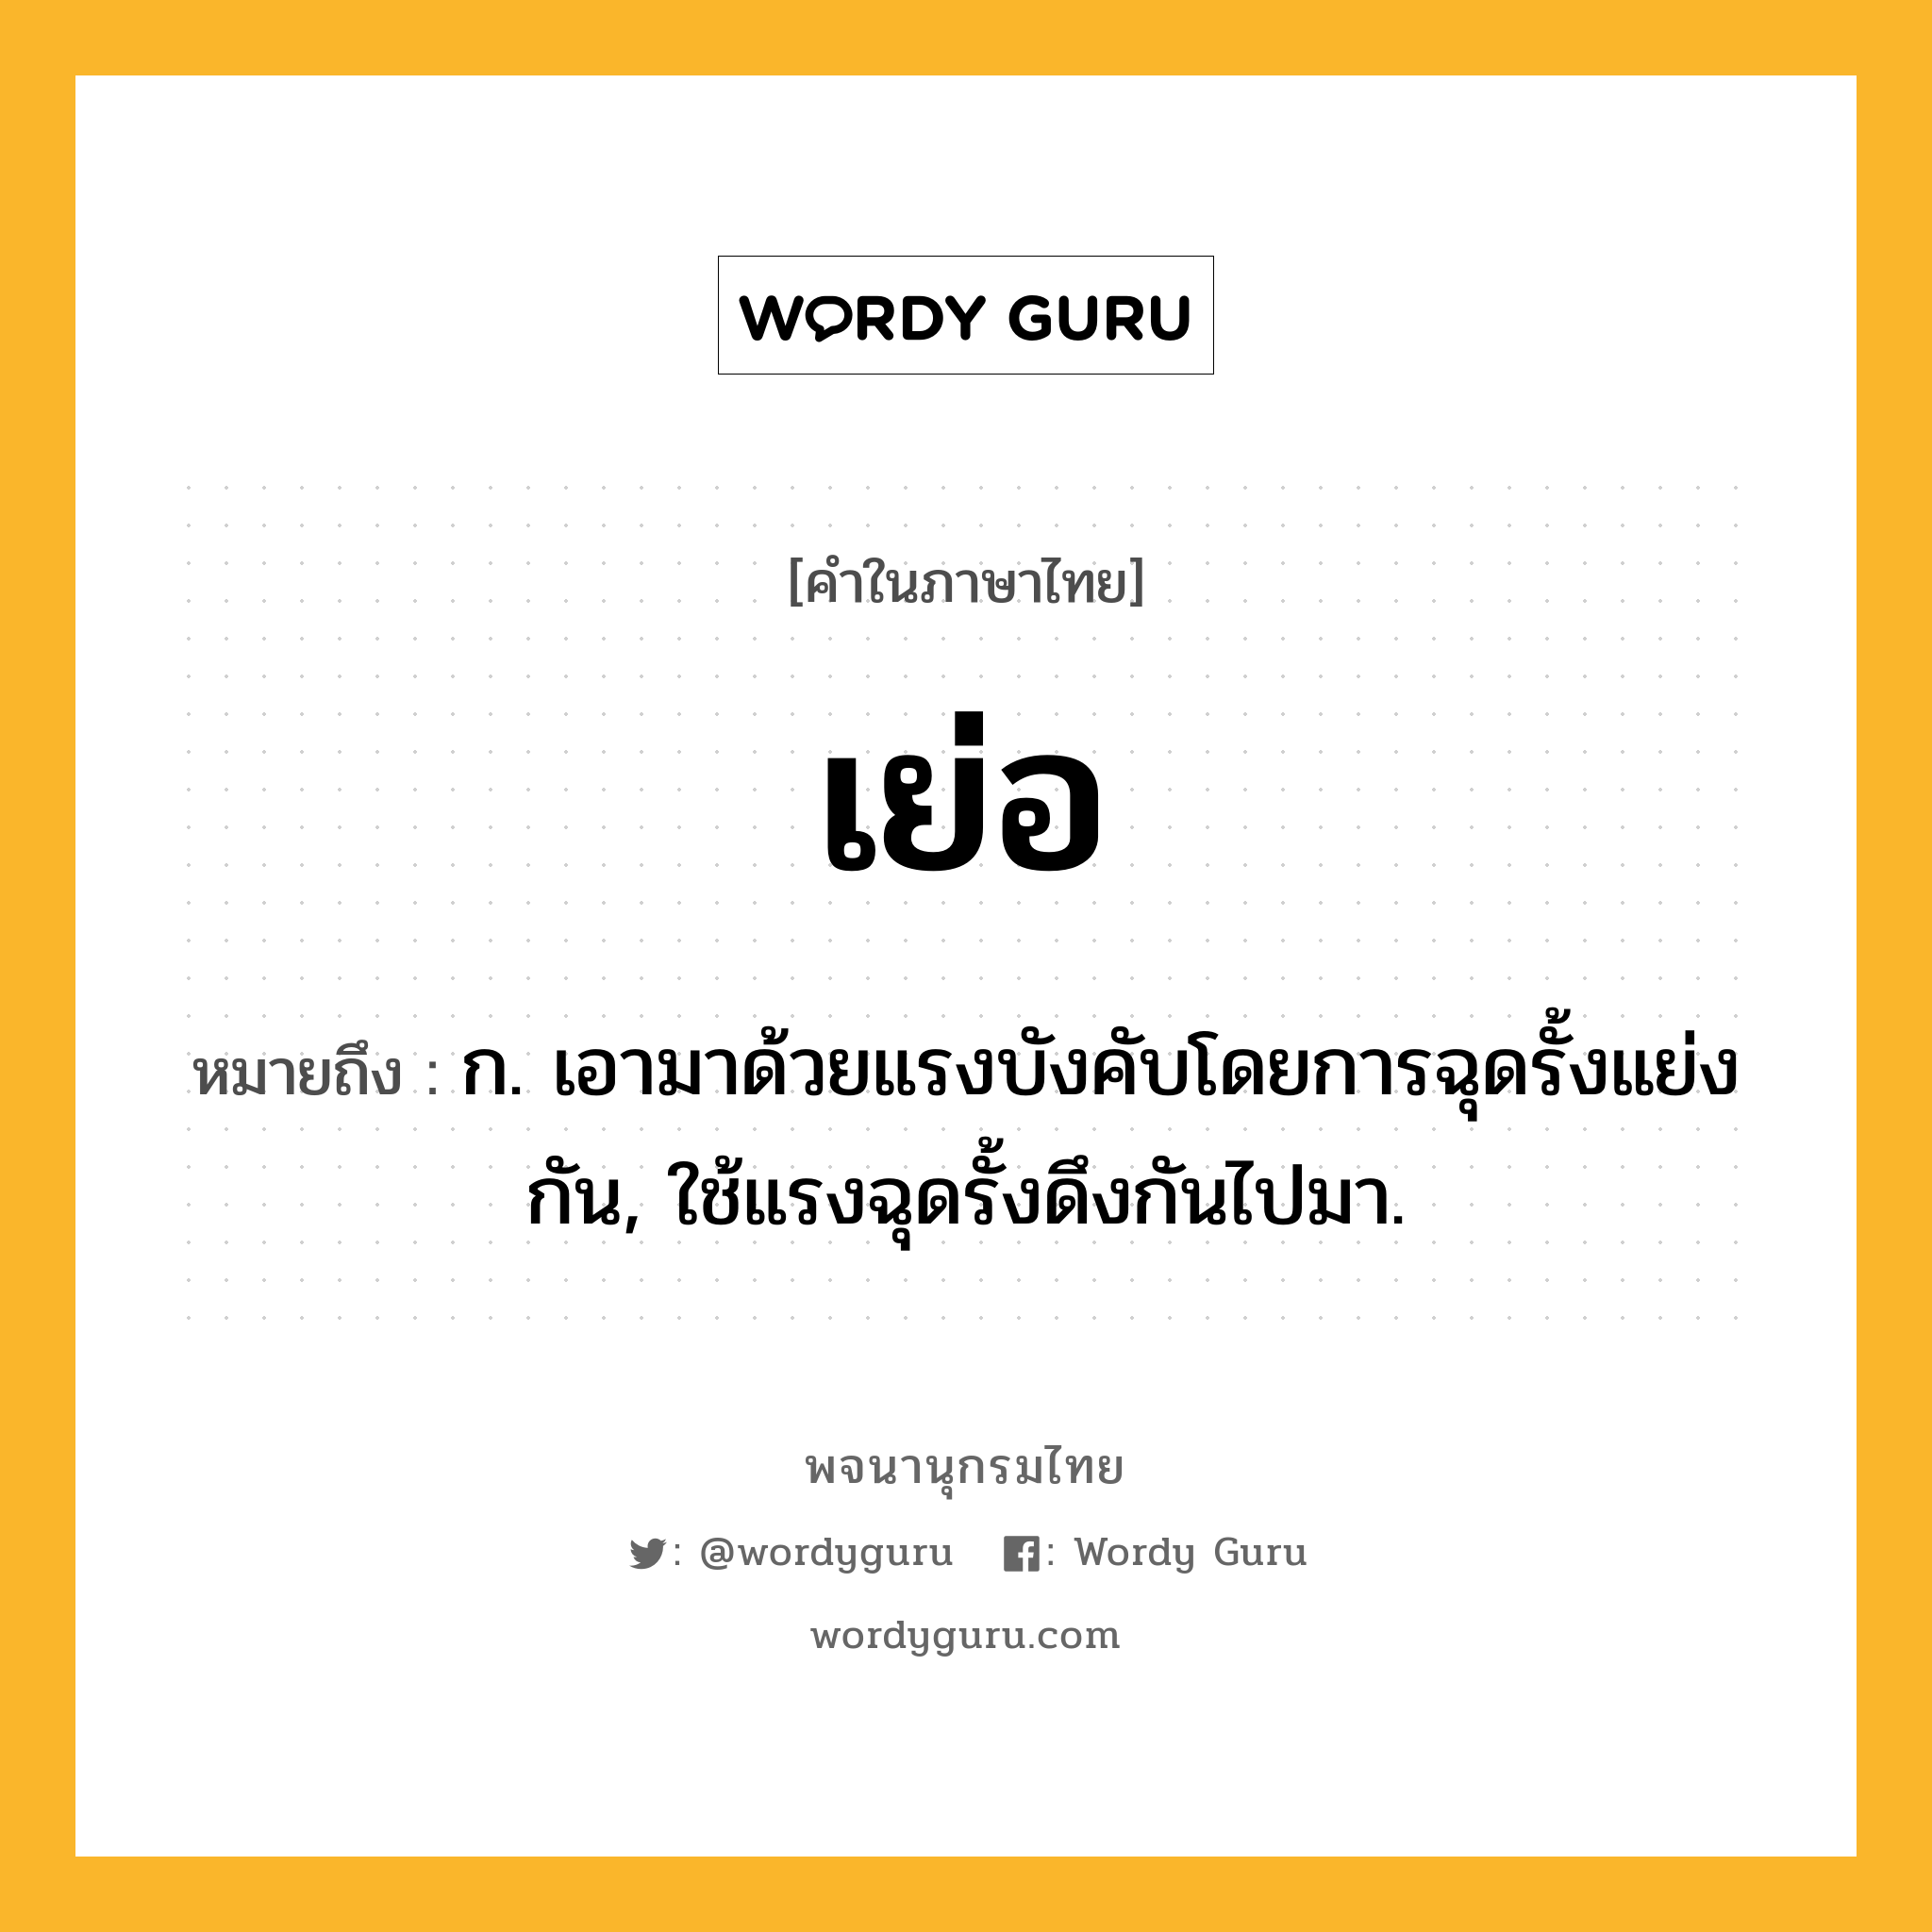 เย่อ หมายถึงอะไร?, คำในภาษาไทย เย่อ หมายถึง ก. เอามาด้วยแรงบังคับโดยการฉุดรั้งแย่งกัน, ใช้แรงฉุดรั้งดึงกันไปมา.